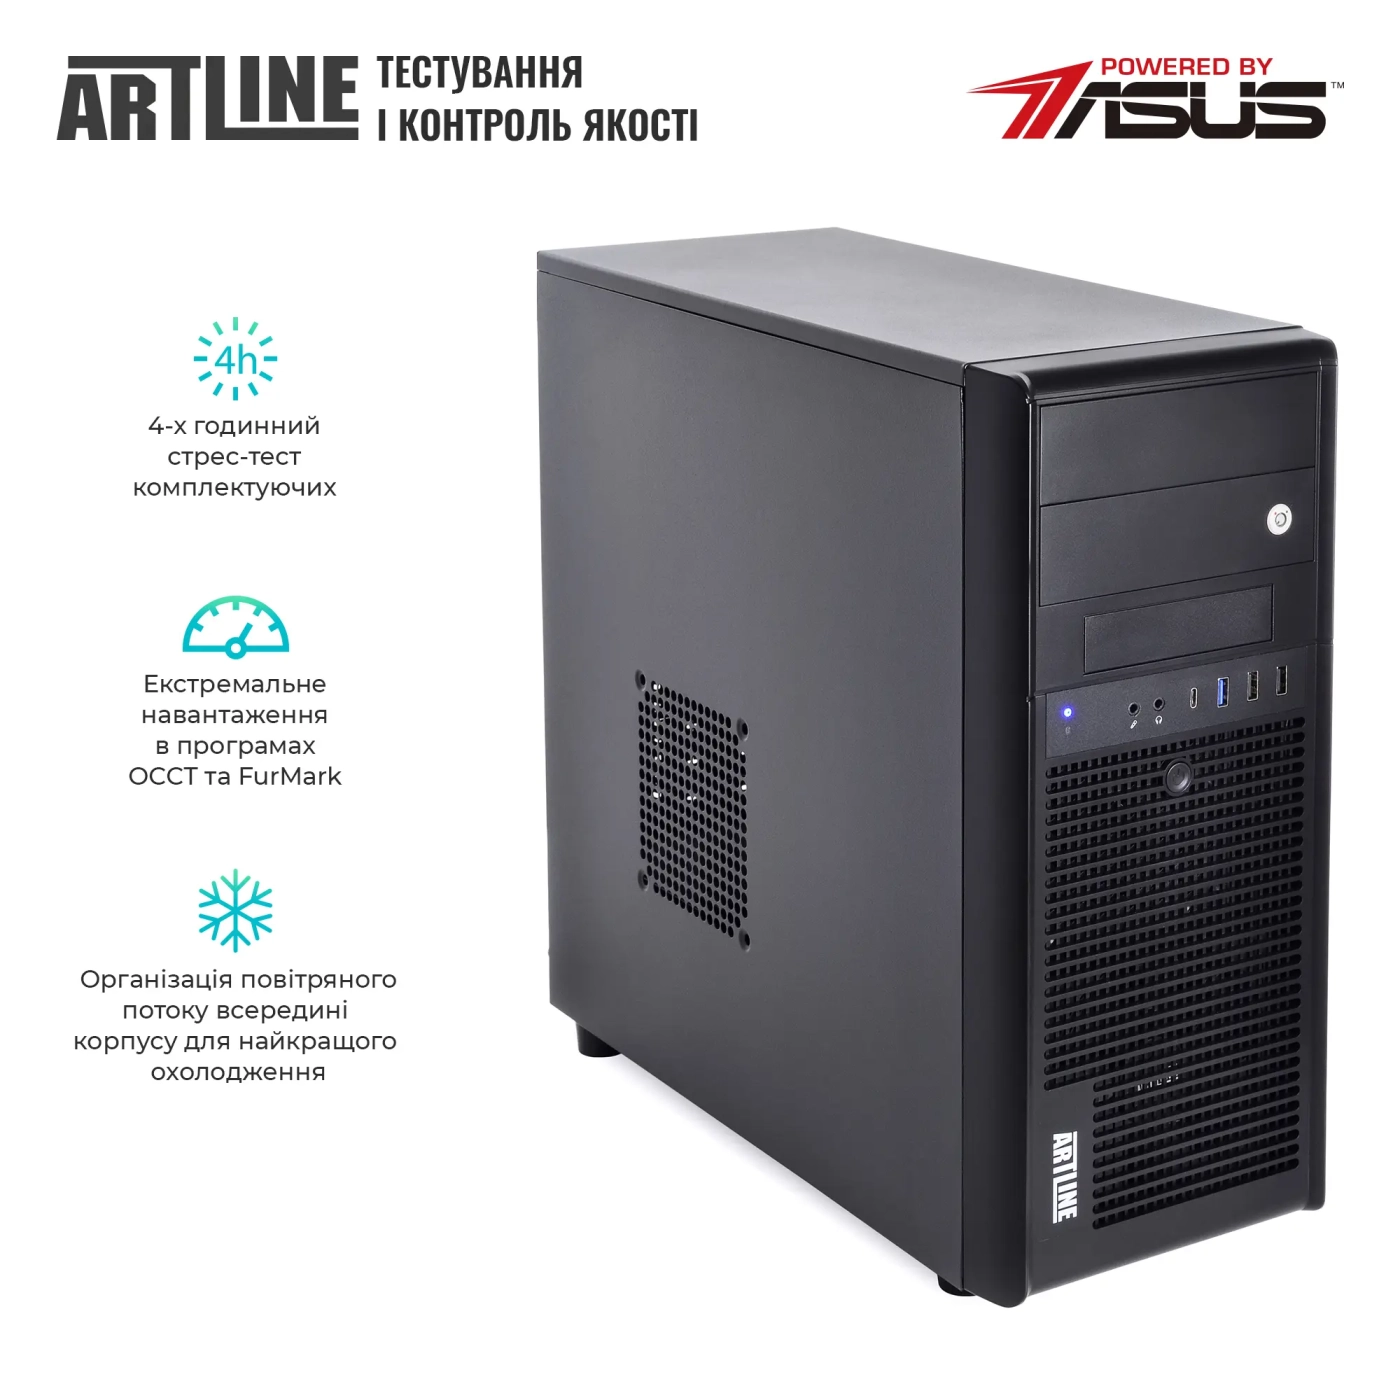 Купить Сервер ARTLINE Business T35 (T35v40) - фото 7